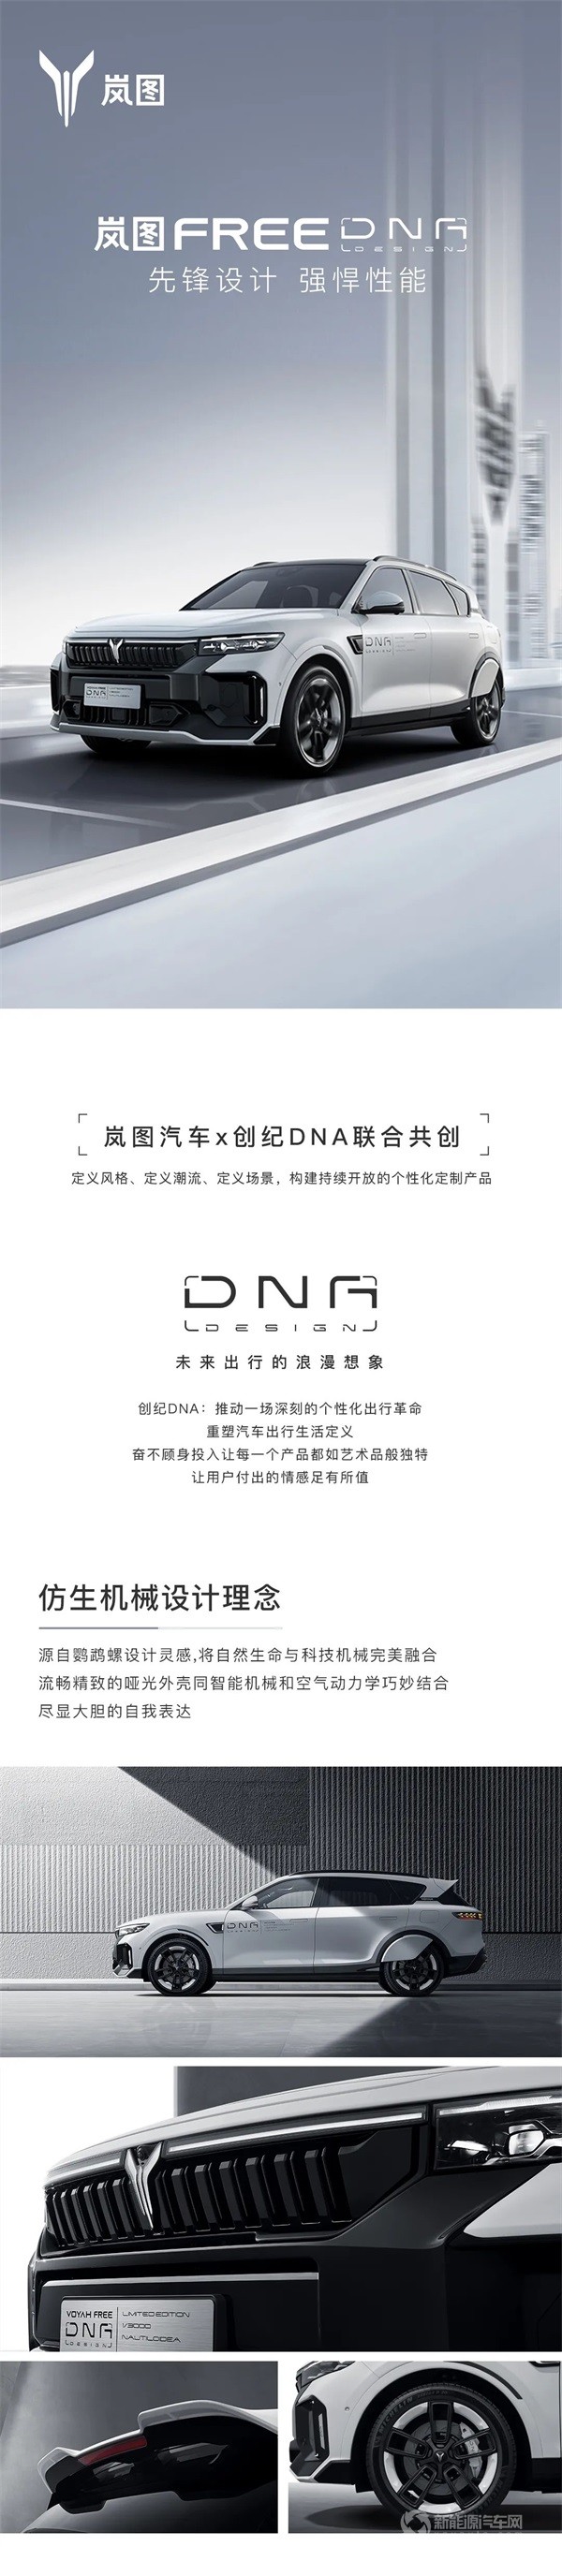 岚图FREE DNA